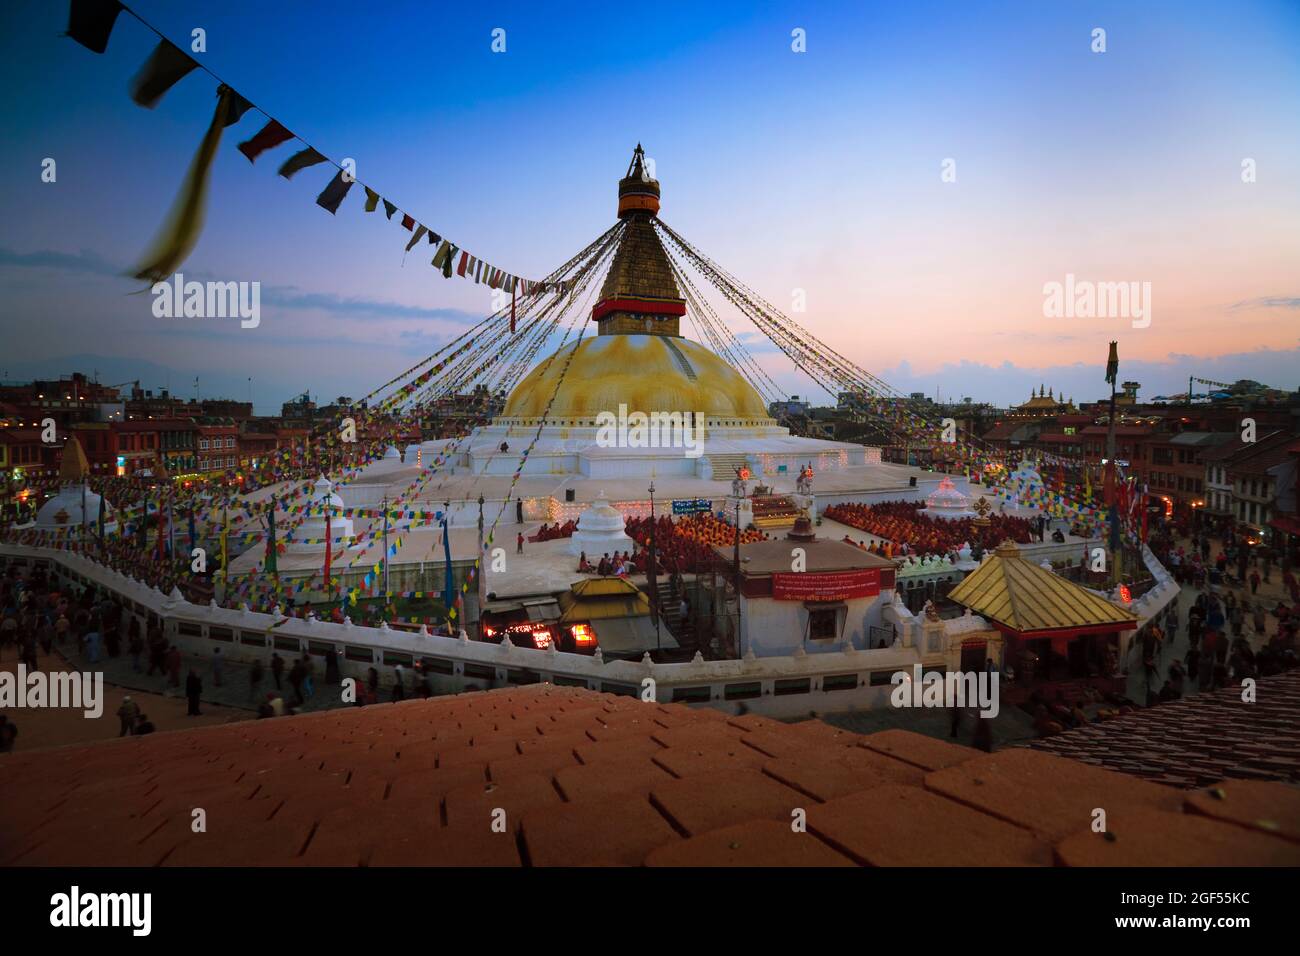 Népal, province de Bagmati, Katmandou, Boudhanath stupa au crépuscule Banque D'Images